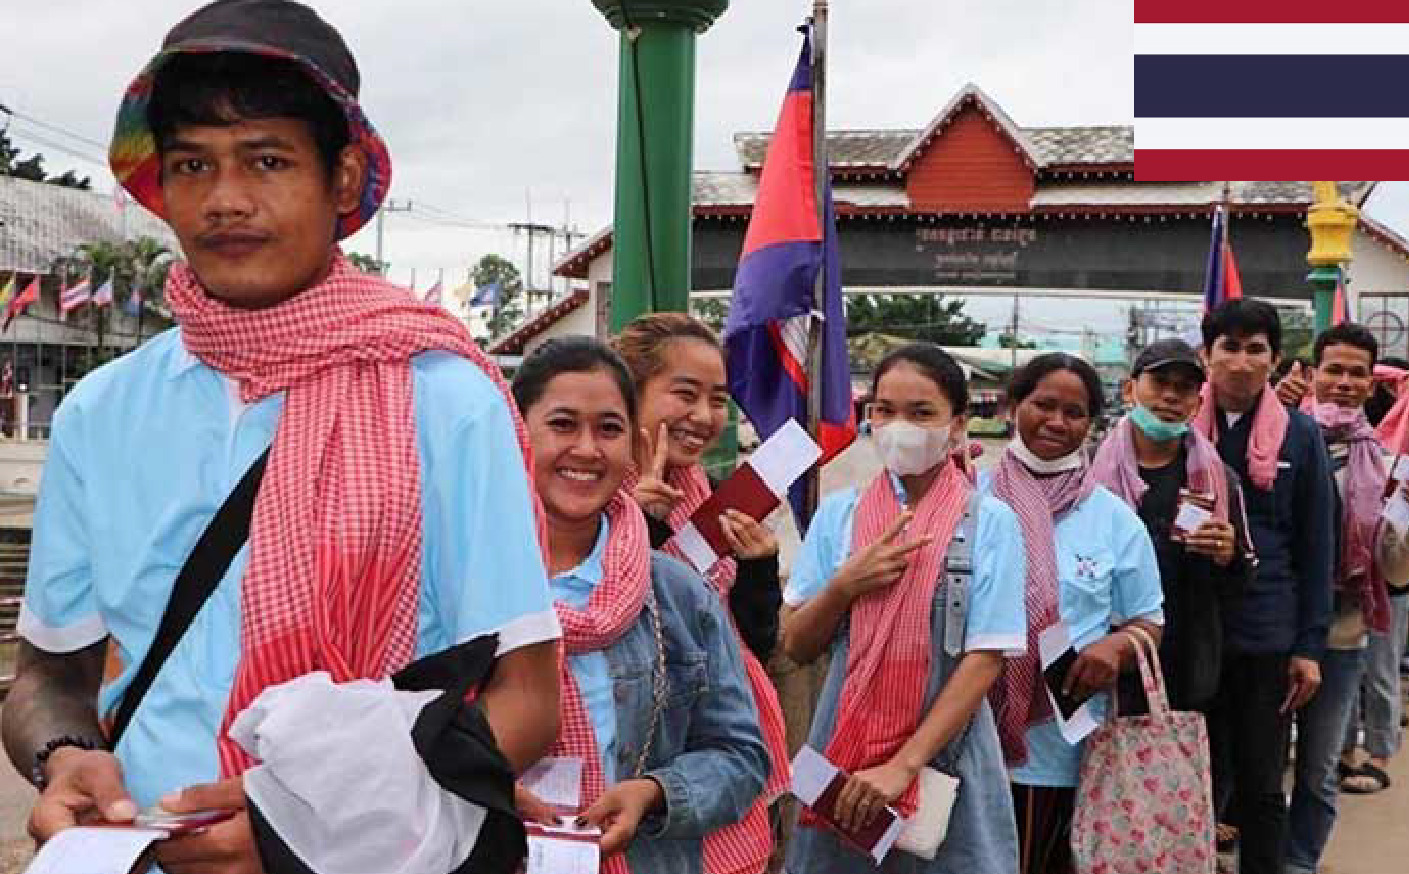 タイ、カンボジア人の労働許可証料金を13ドルに値下げ